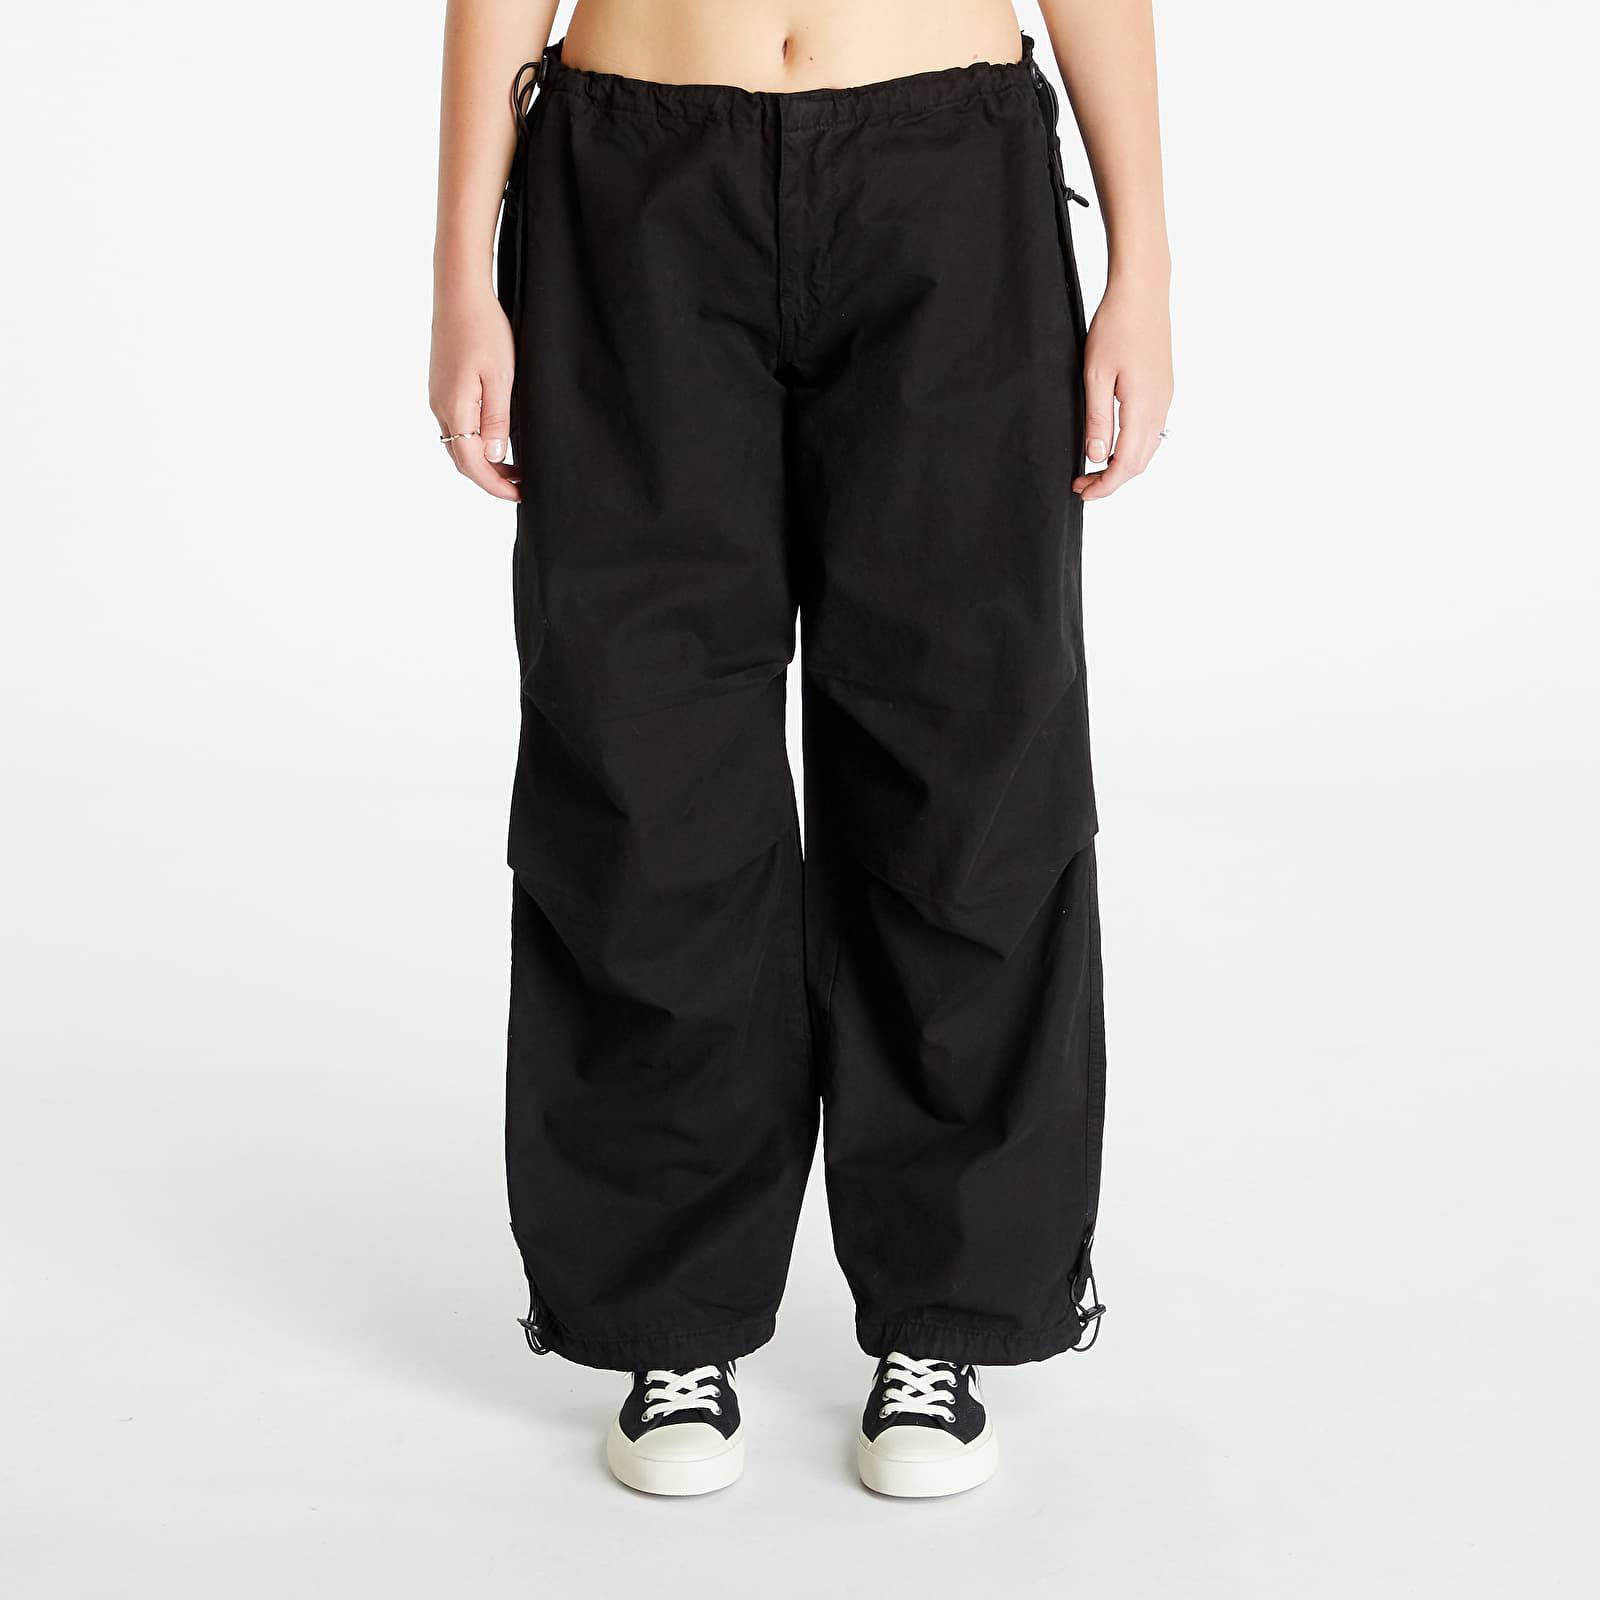 Queens jeans | Black Classics and Pants Pants Ladies Urban Parachute Cotton